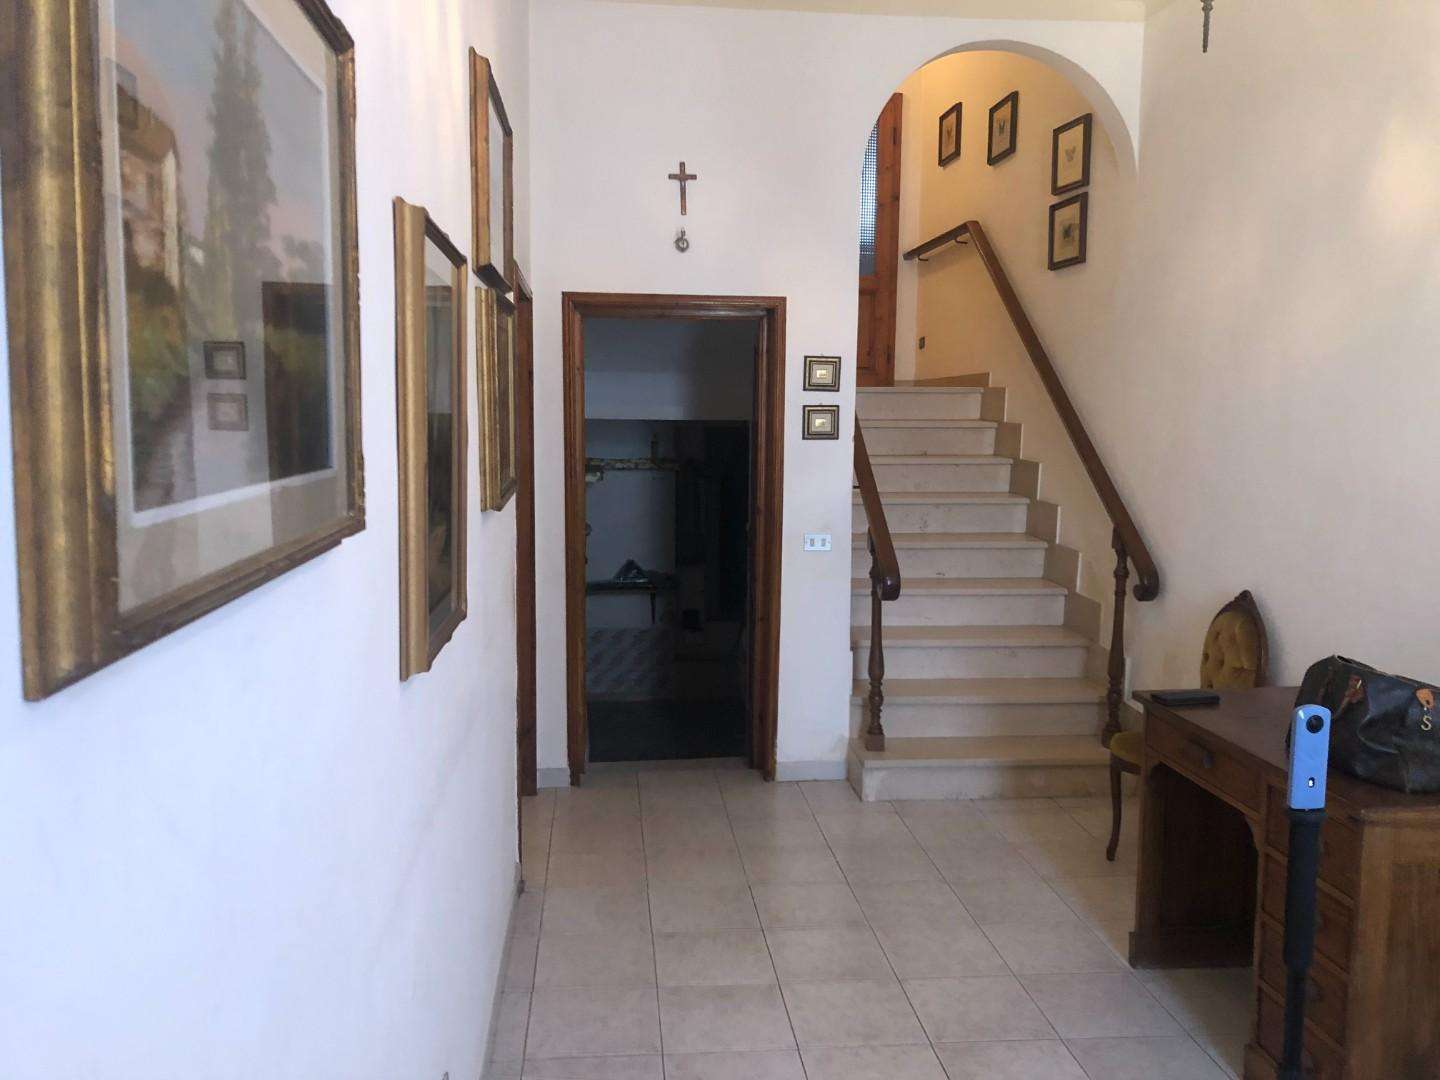 Palazzo - Stabile in Vendita a San Miniato San Miniato Basso PI,